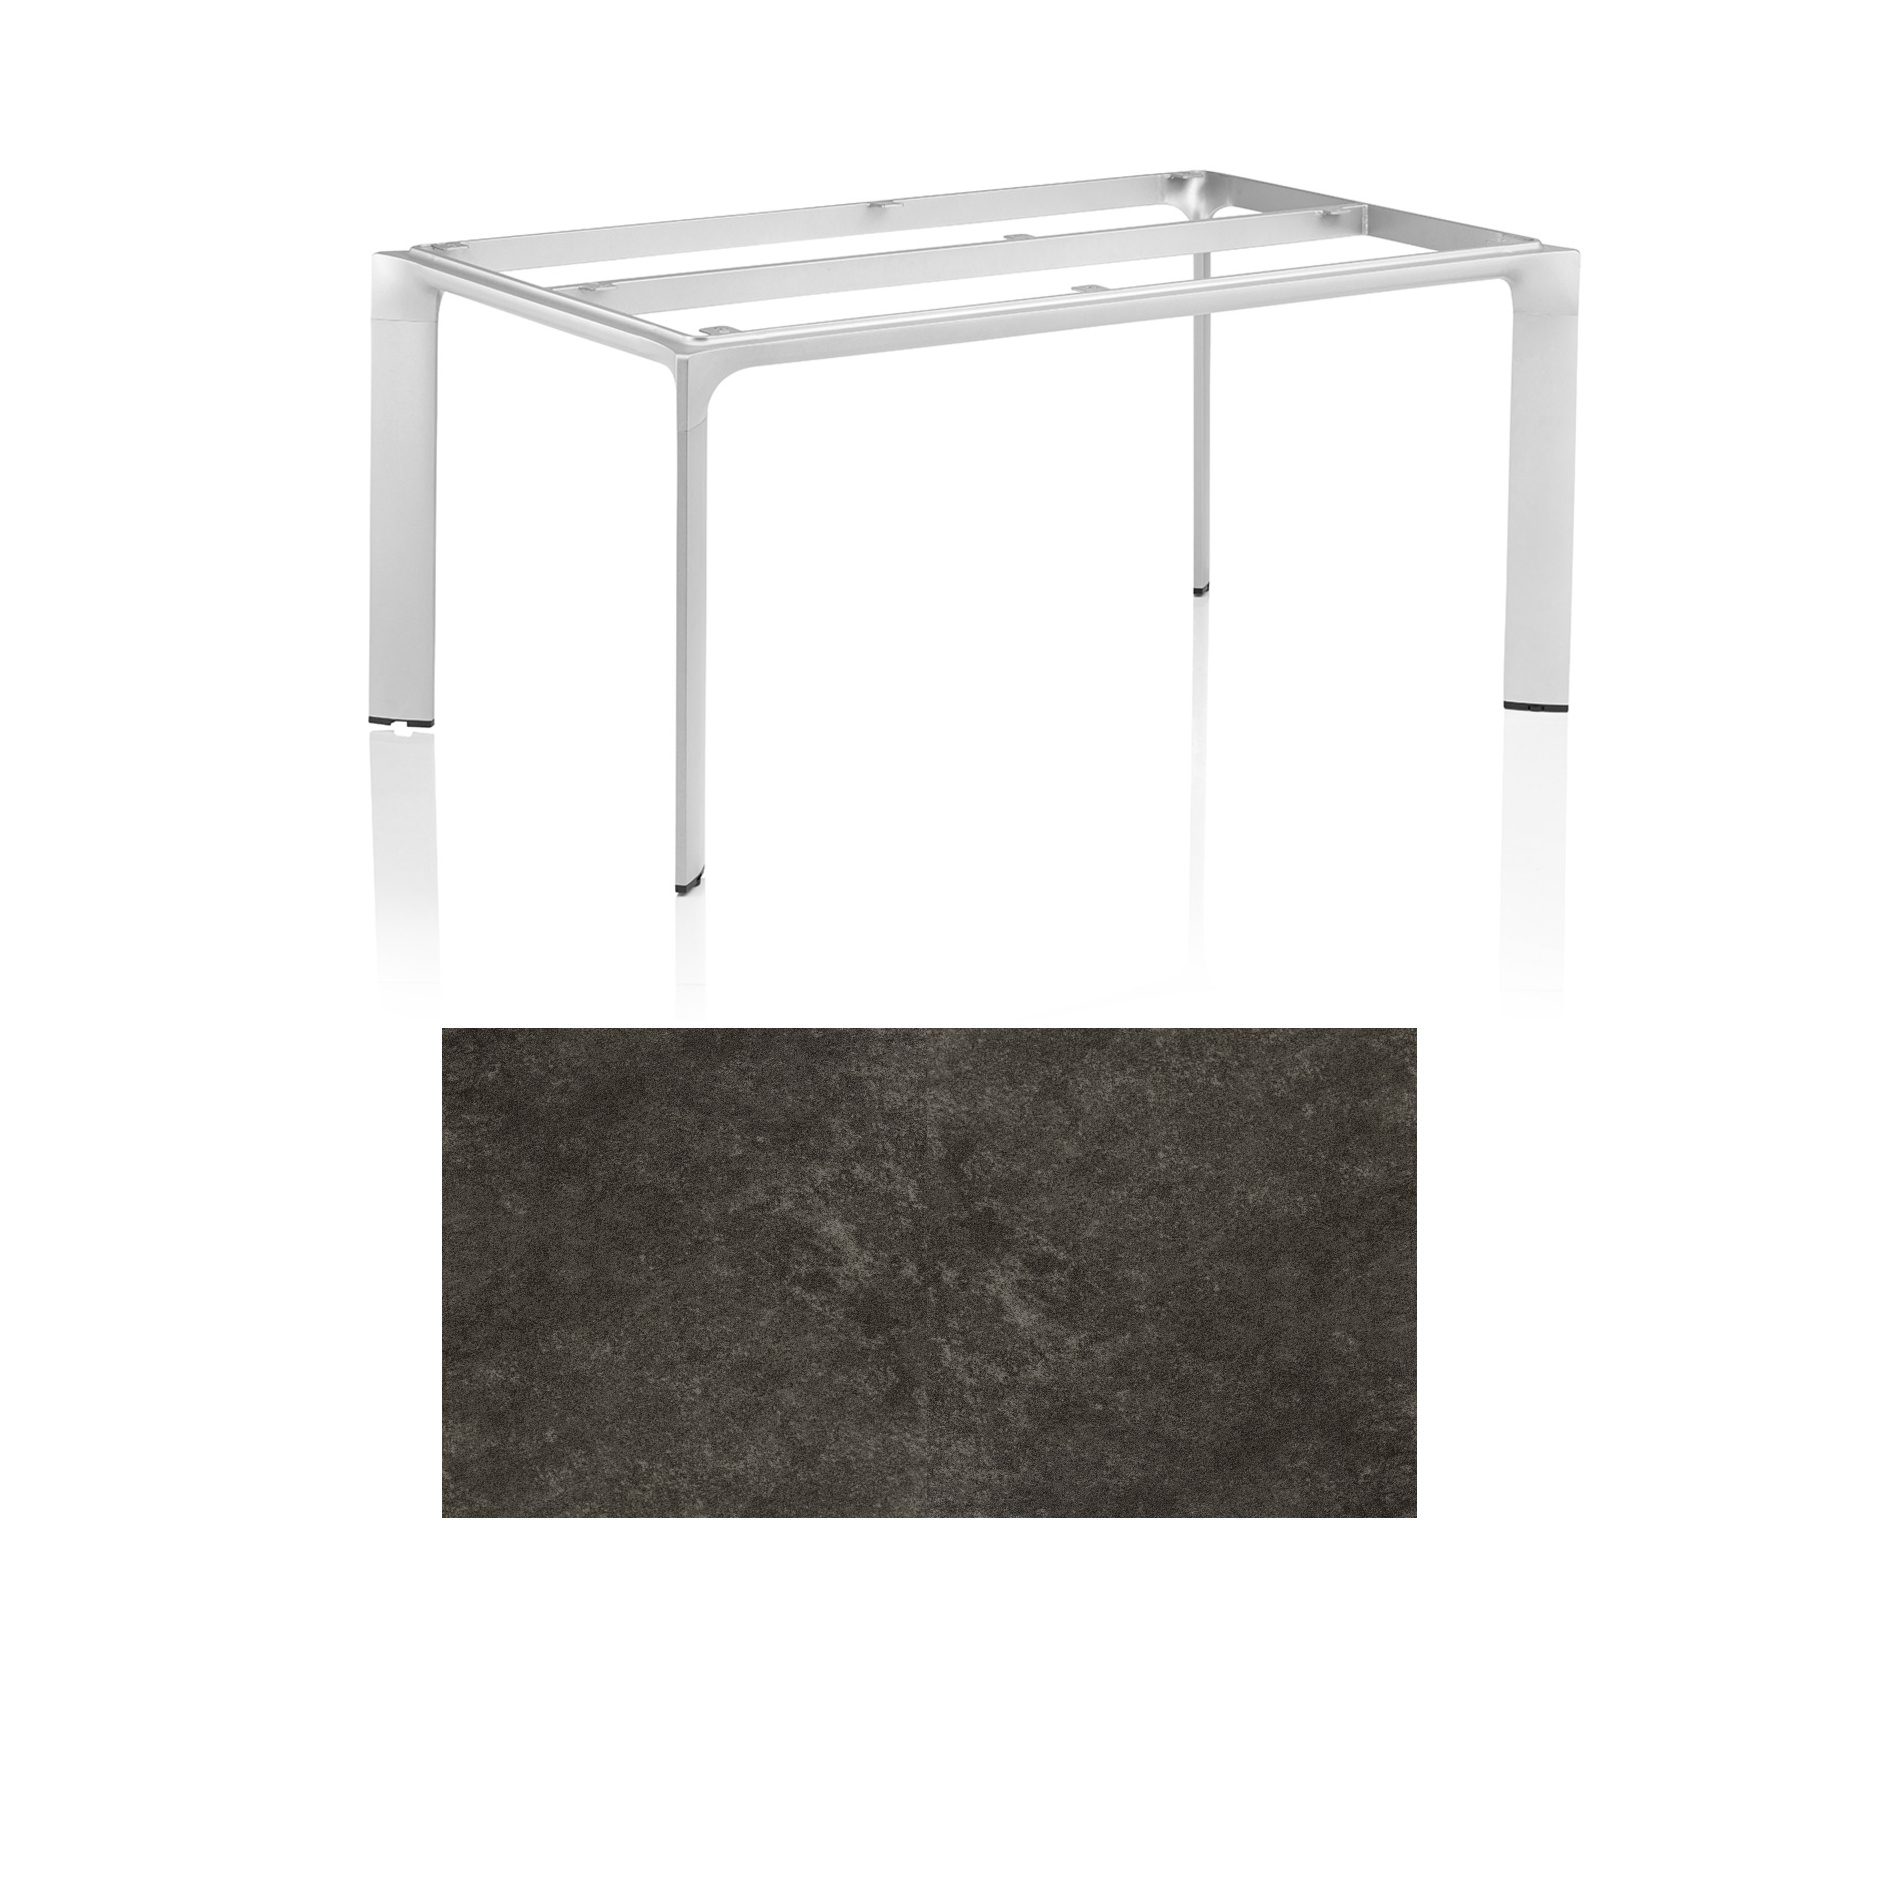 Kettler "Diamond" Tischsystem Gartentisch, Tischgestell 180x95cm, Alu silber, Tischplatte Keramik anthrazit